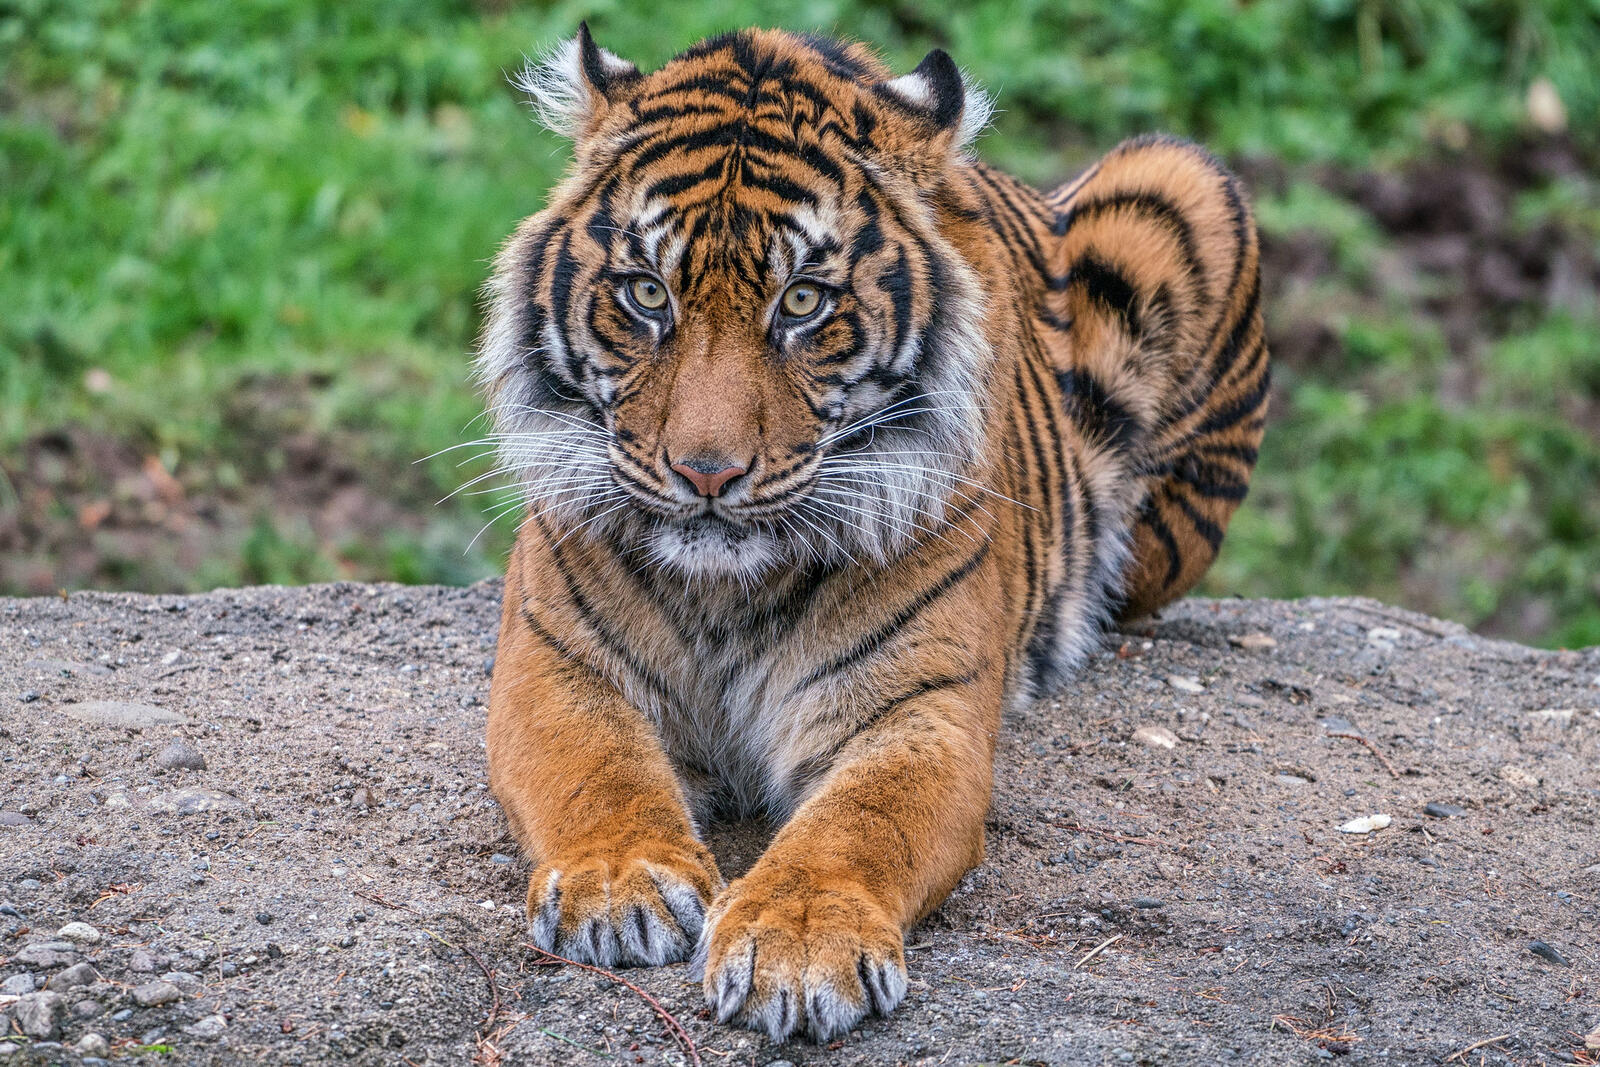 Wallpapers animals predators tiger on the desktop